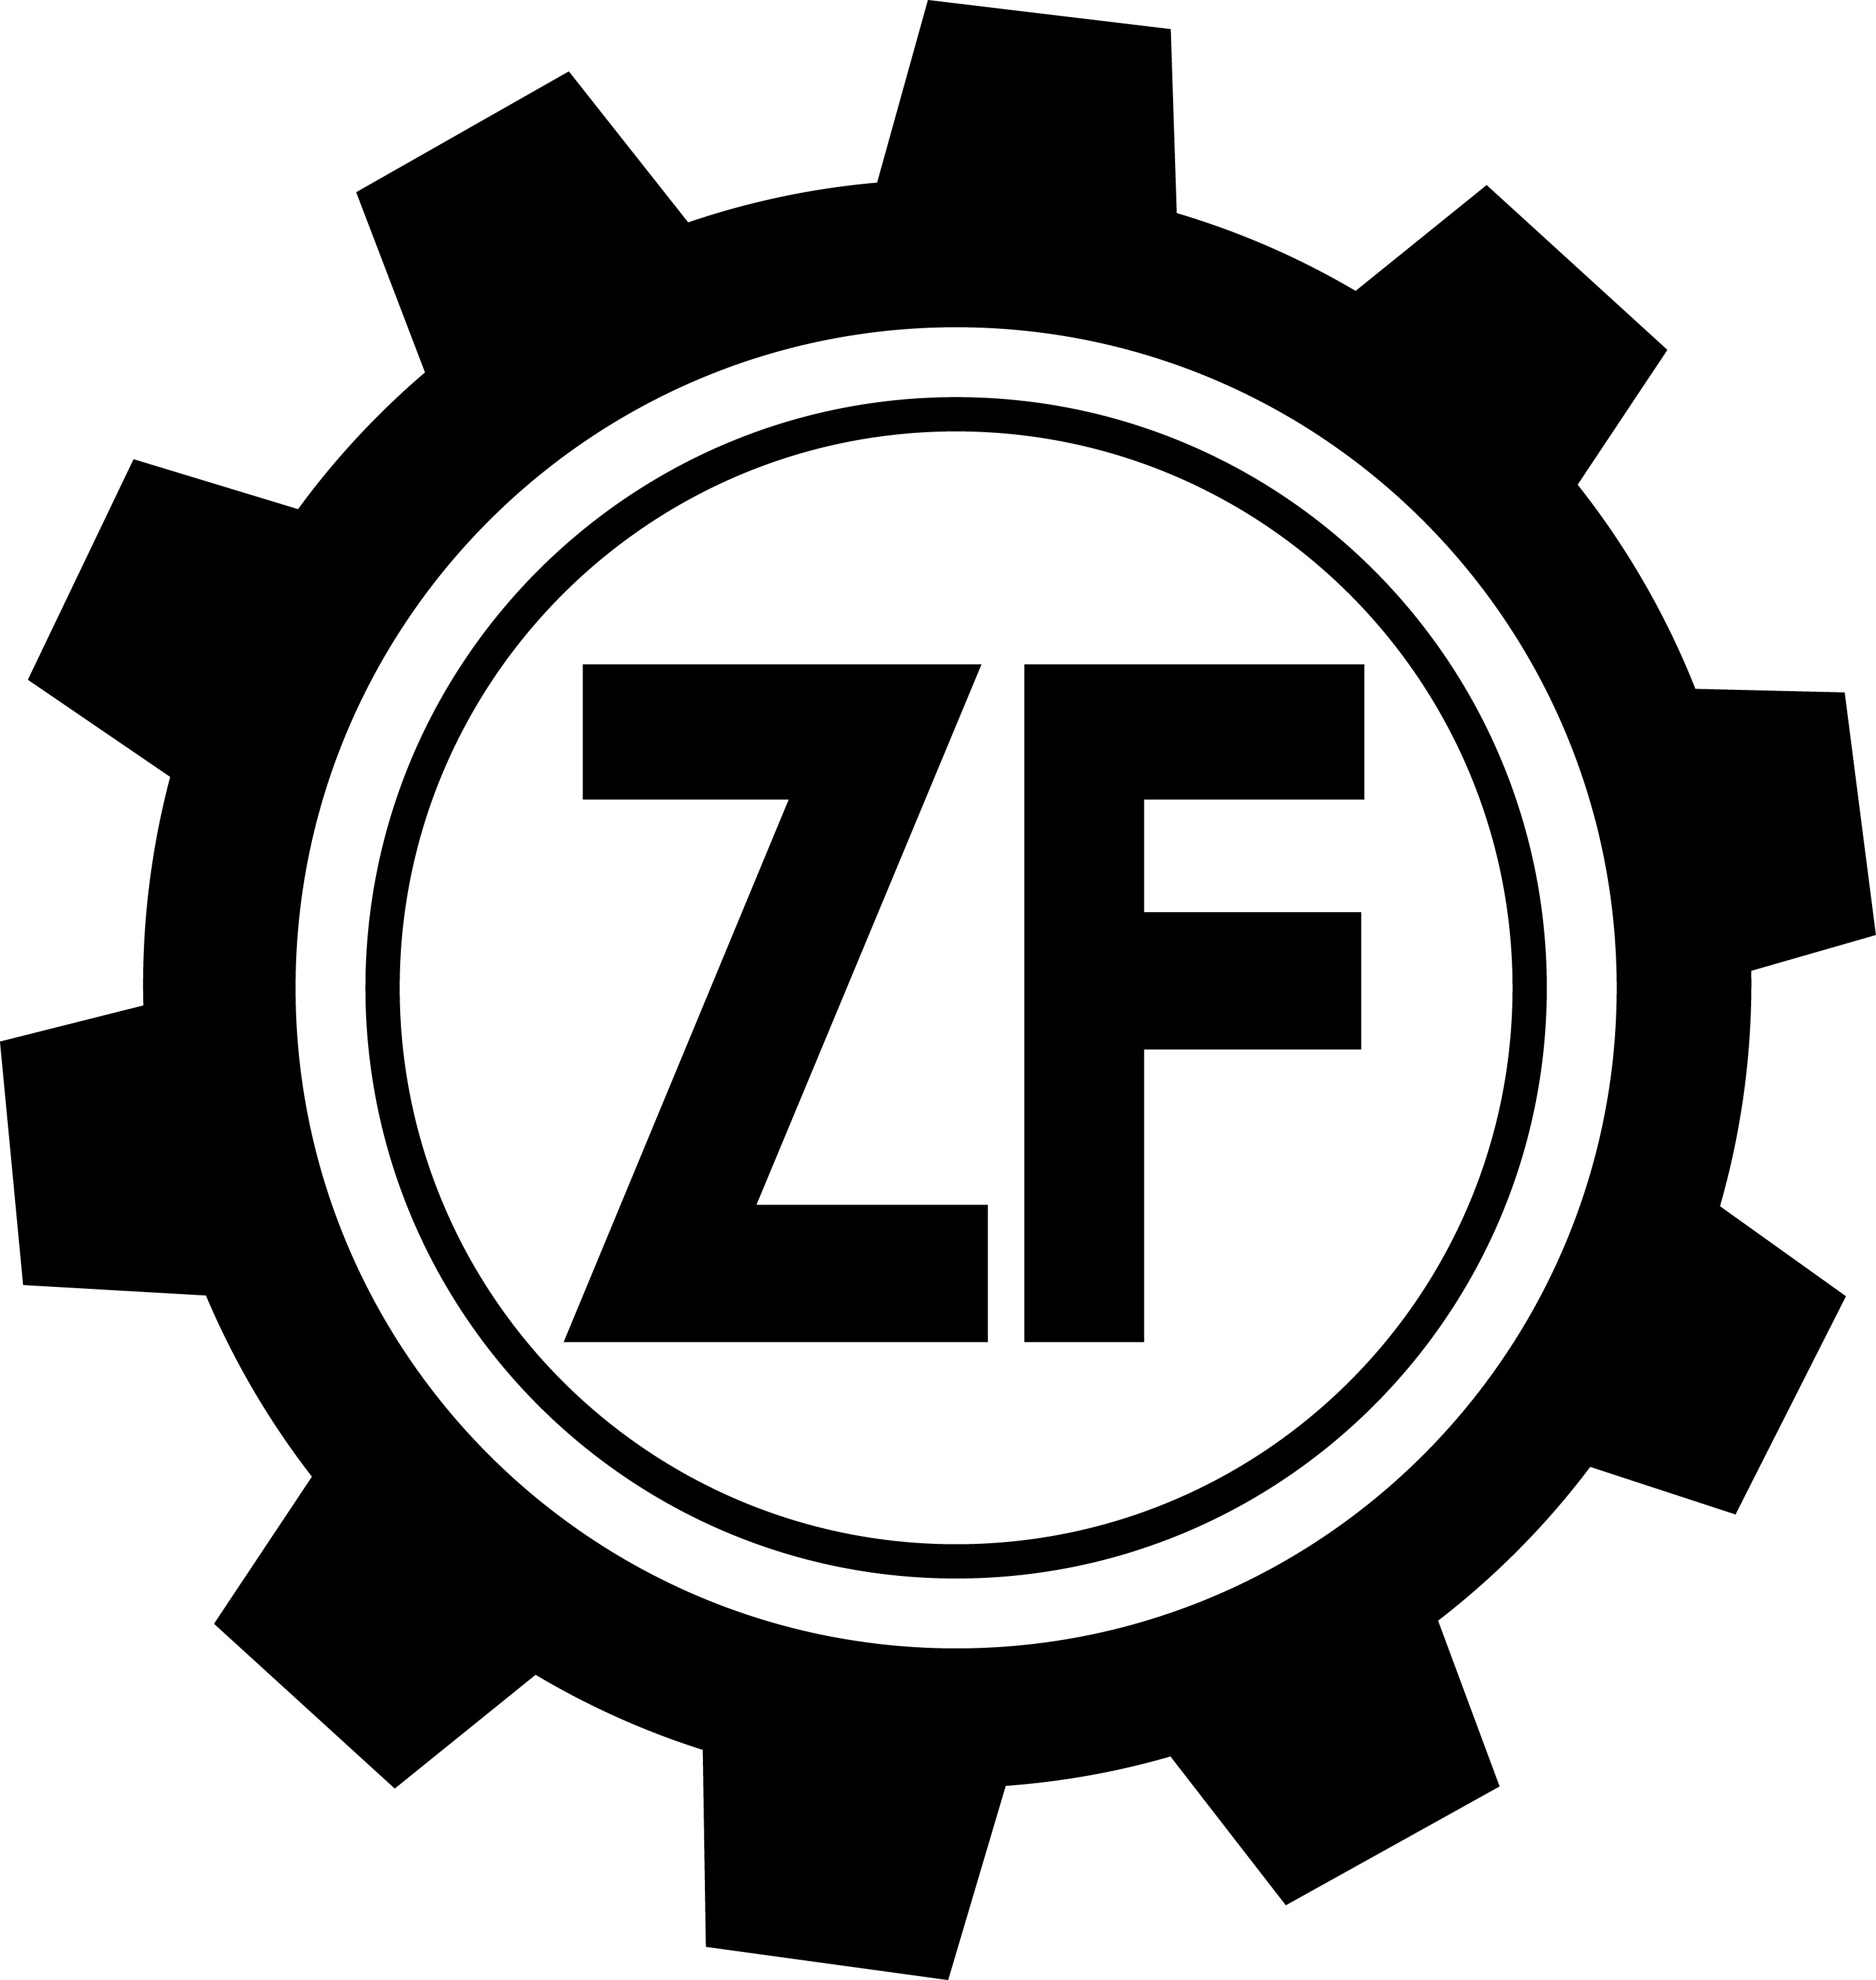 Zellner Foundation